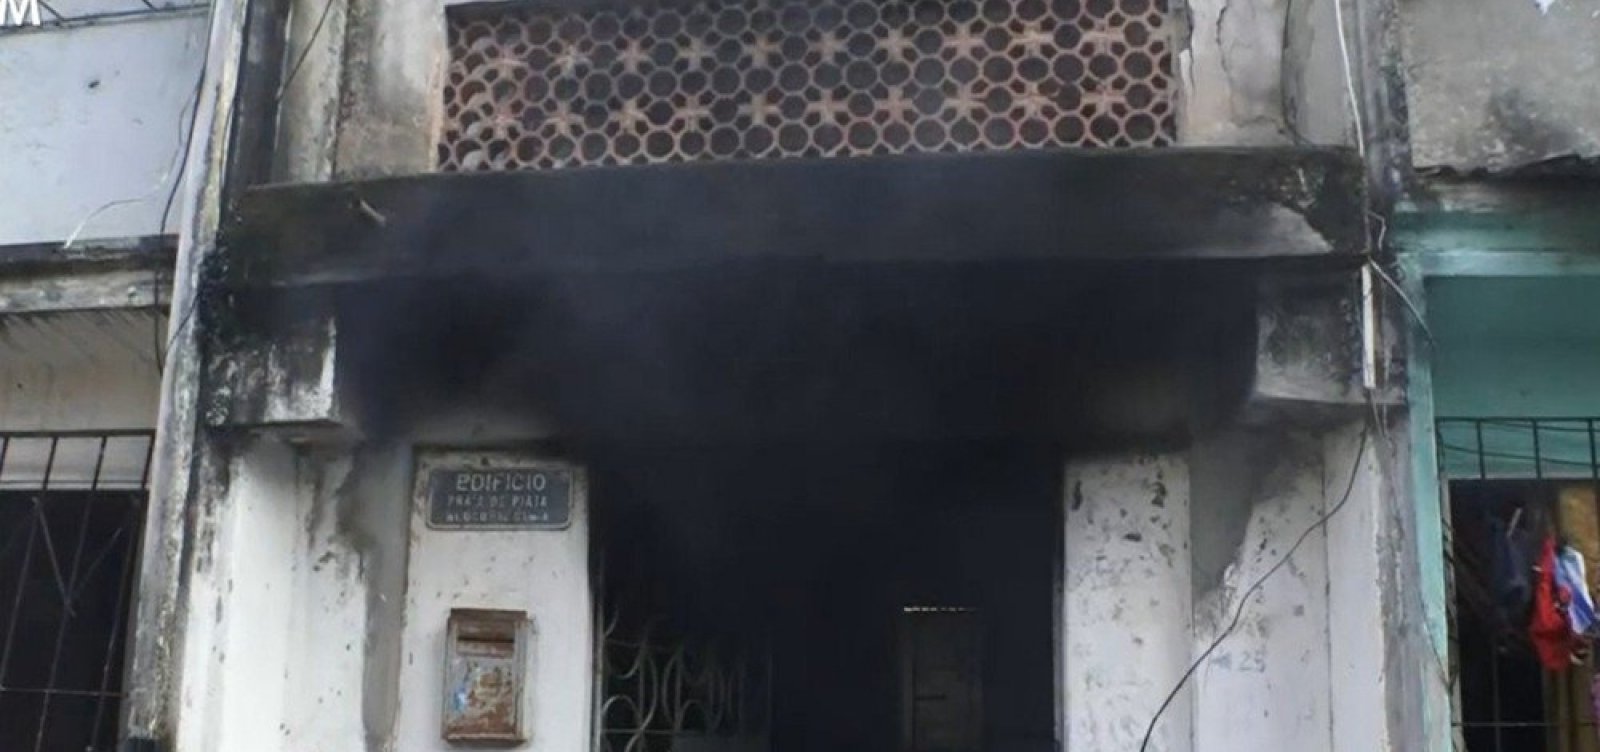 Quadro de energia pega fogo e atinge prédio em Periperi